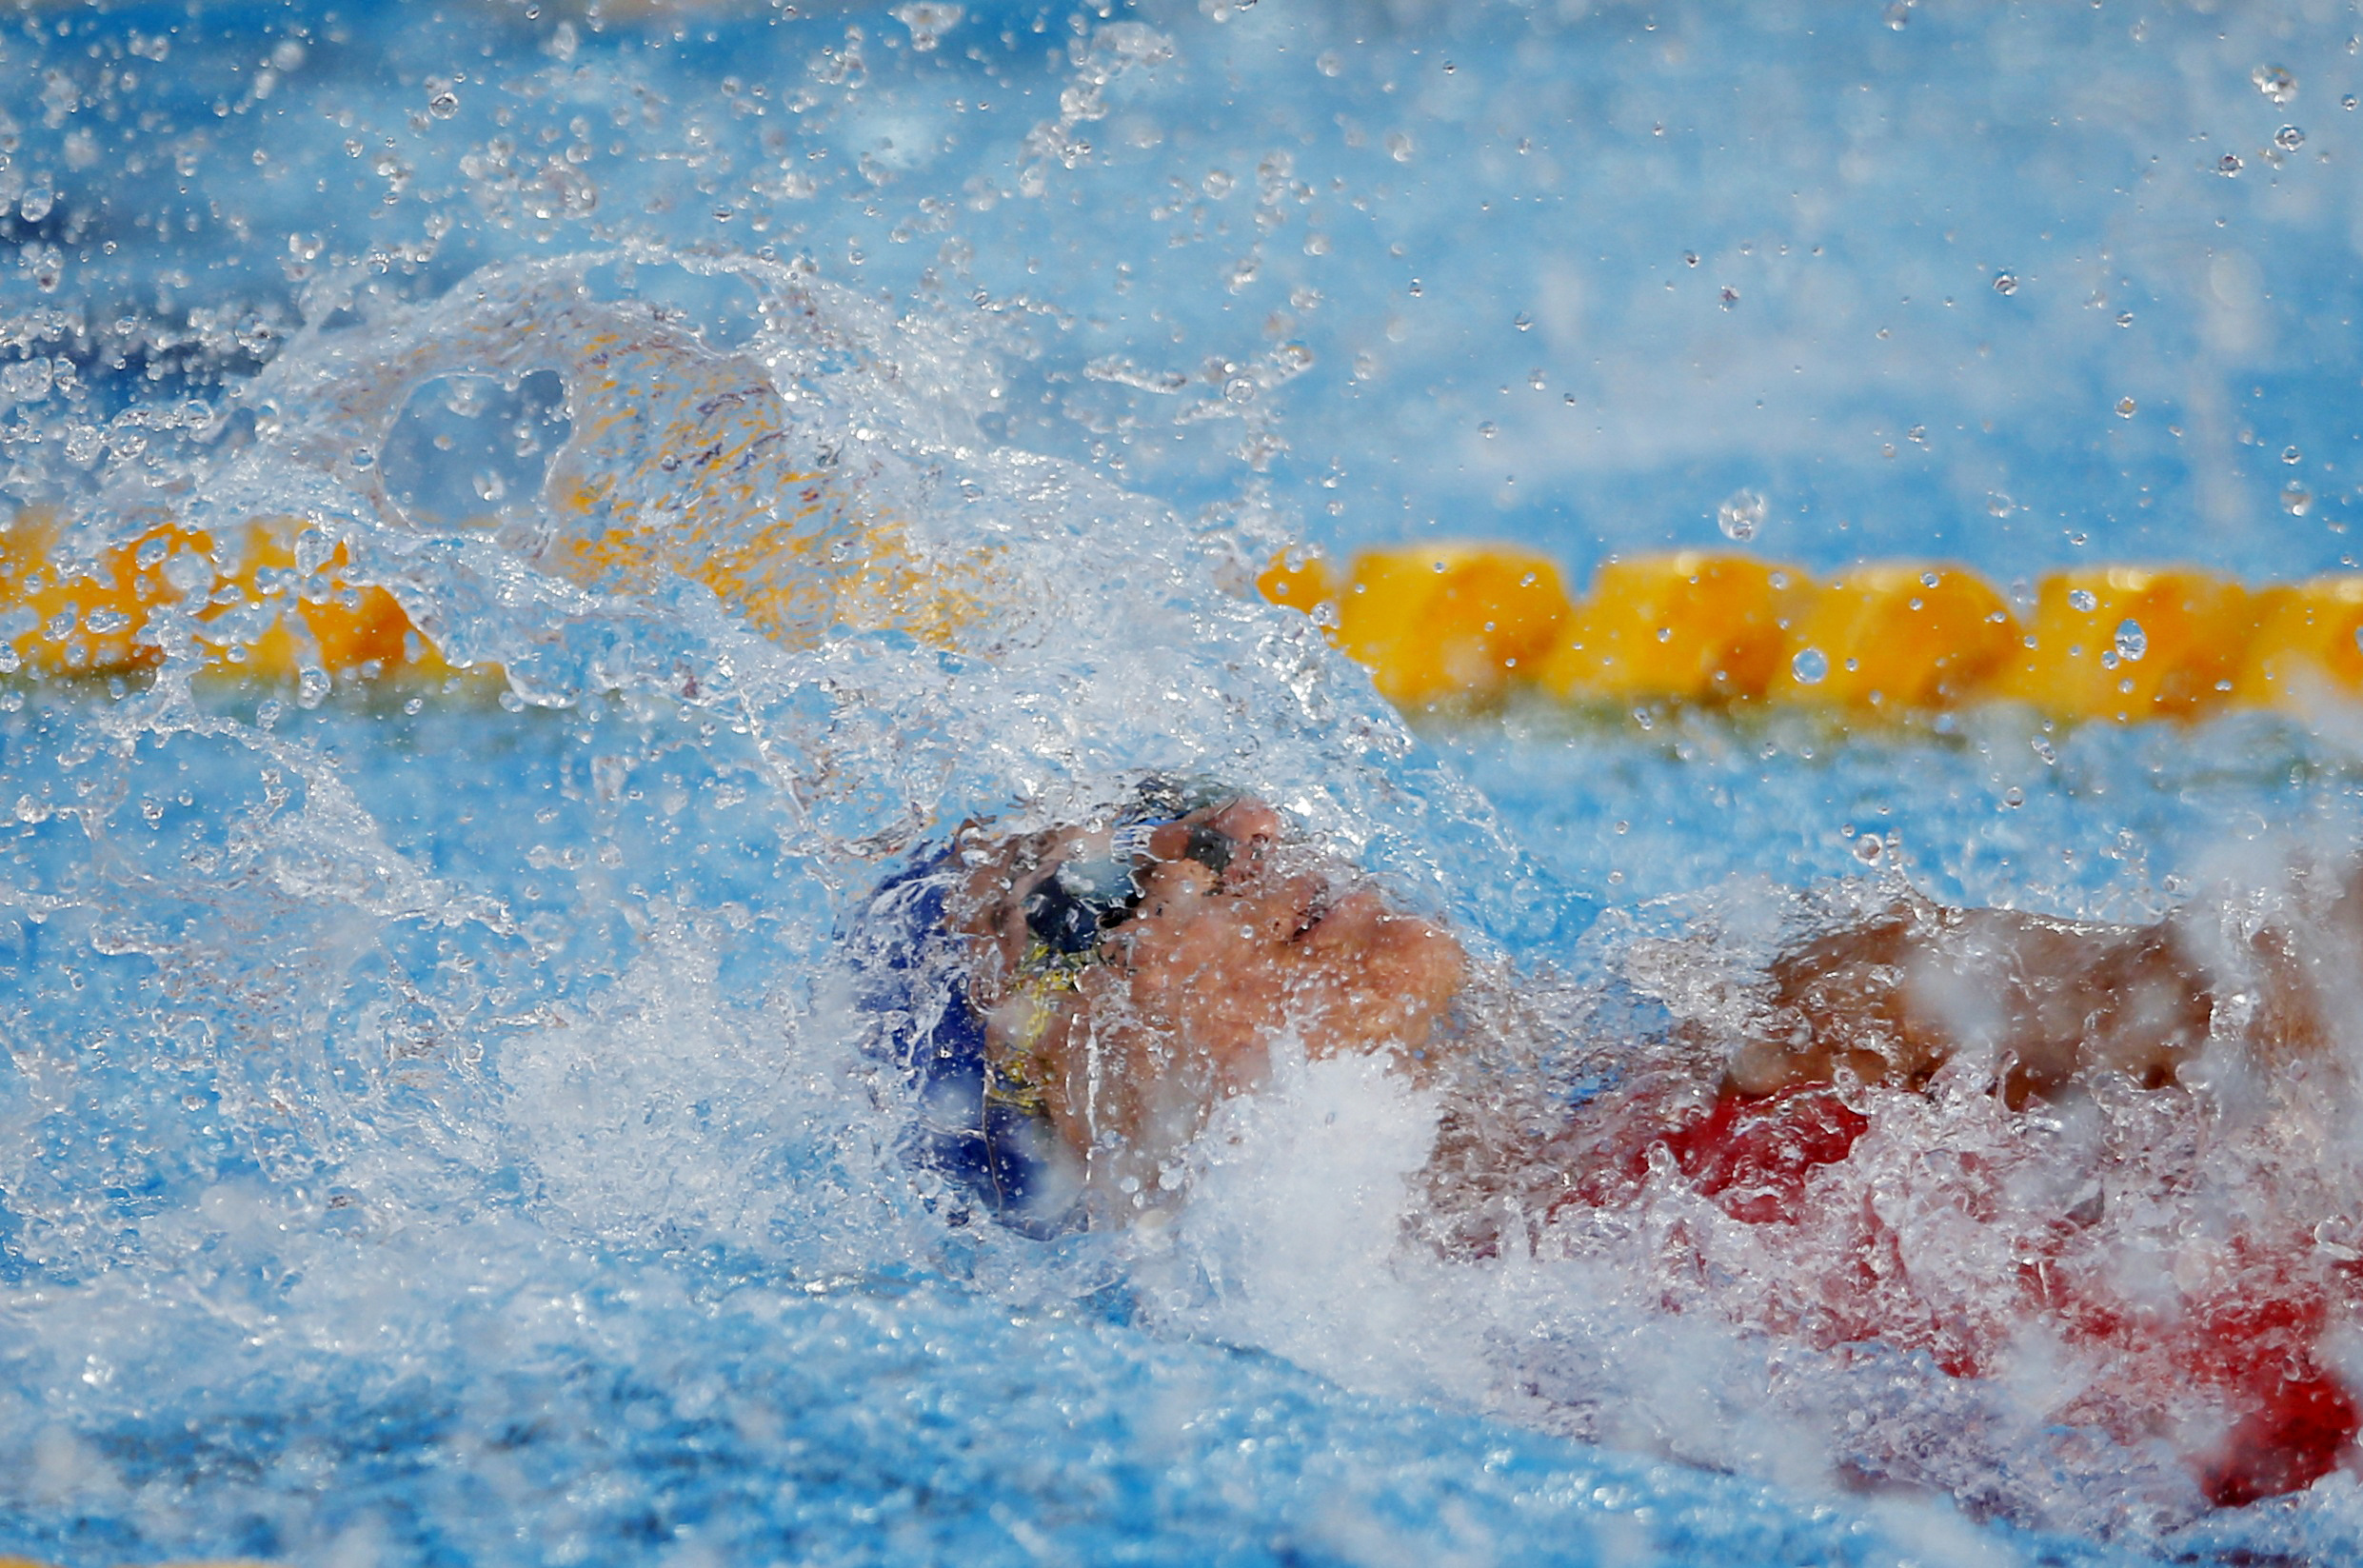 Η Νόρα Δράκου έκανε πανελλήνιο ρεκόρ και προκρίθηκε στα ημιτελικά των 50 μέτρων ελεύθερο του ευρωπαϊκού πρωταθλήματος κολύμβησης